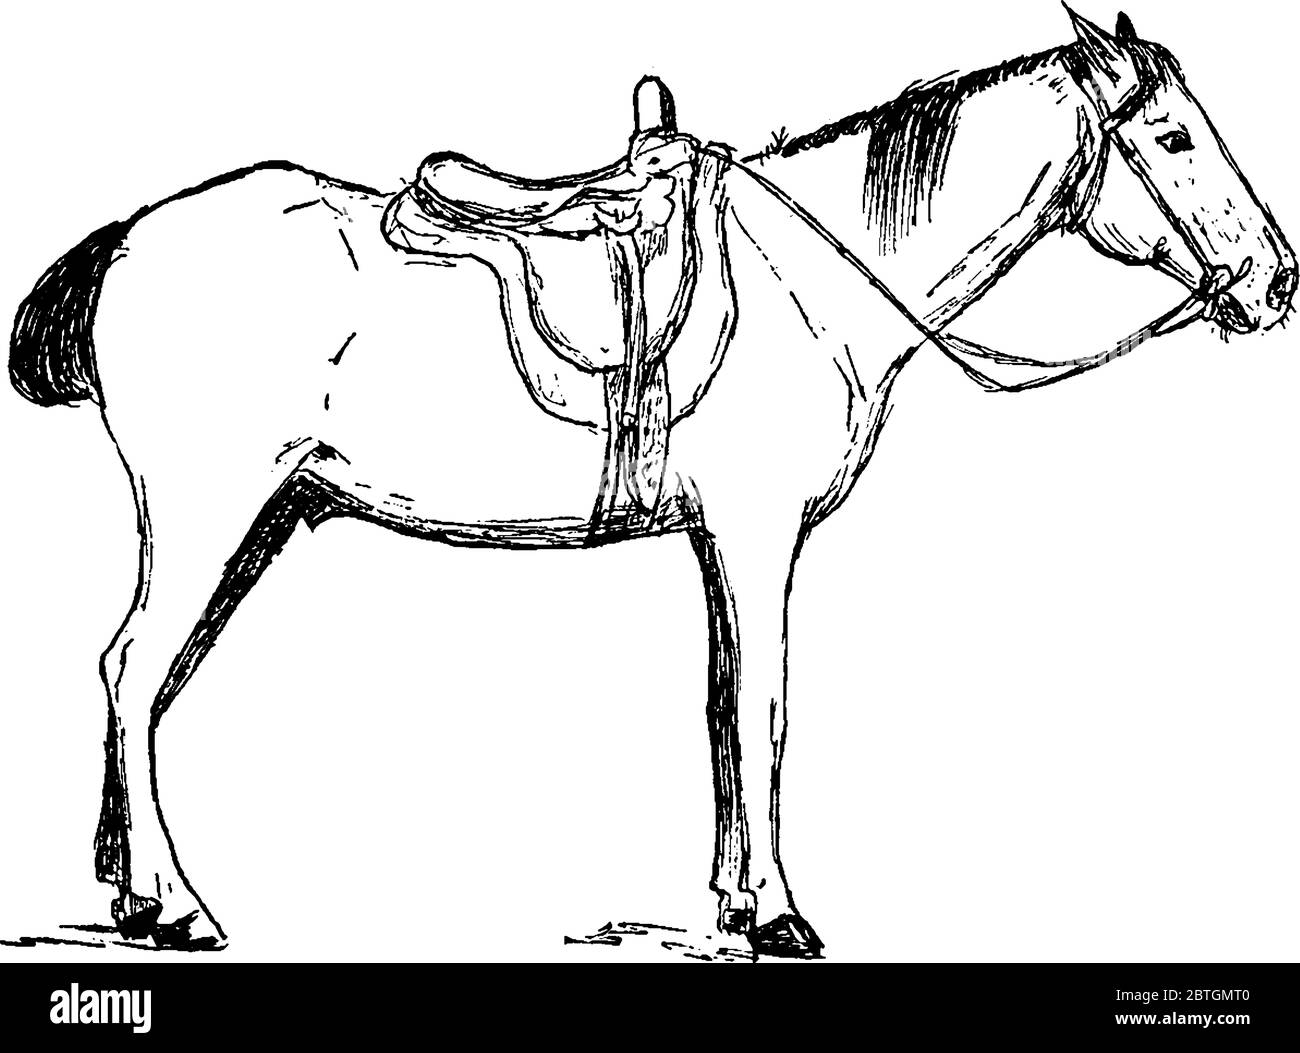 Un cheval domestique utilisé pour l'équitation et le transport. Le cheval Equus ferus caballus est l'une des deux sous-espèces existantes d'Equus ferus. C'est un ungul à embout impair Illustration de Vecteur